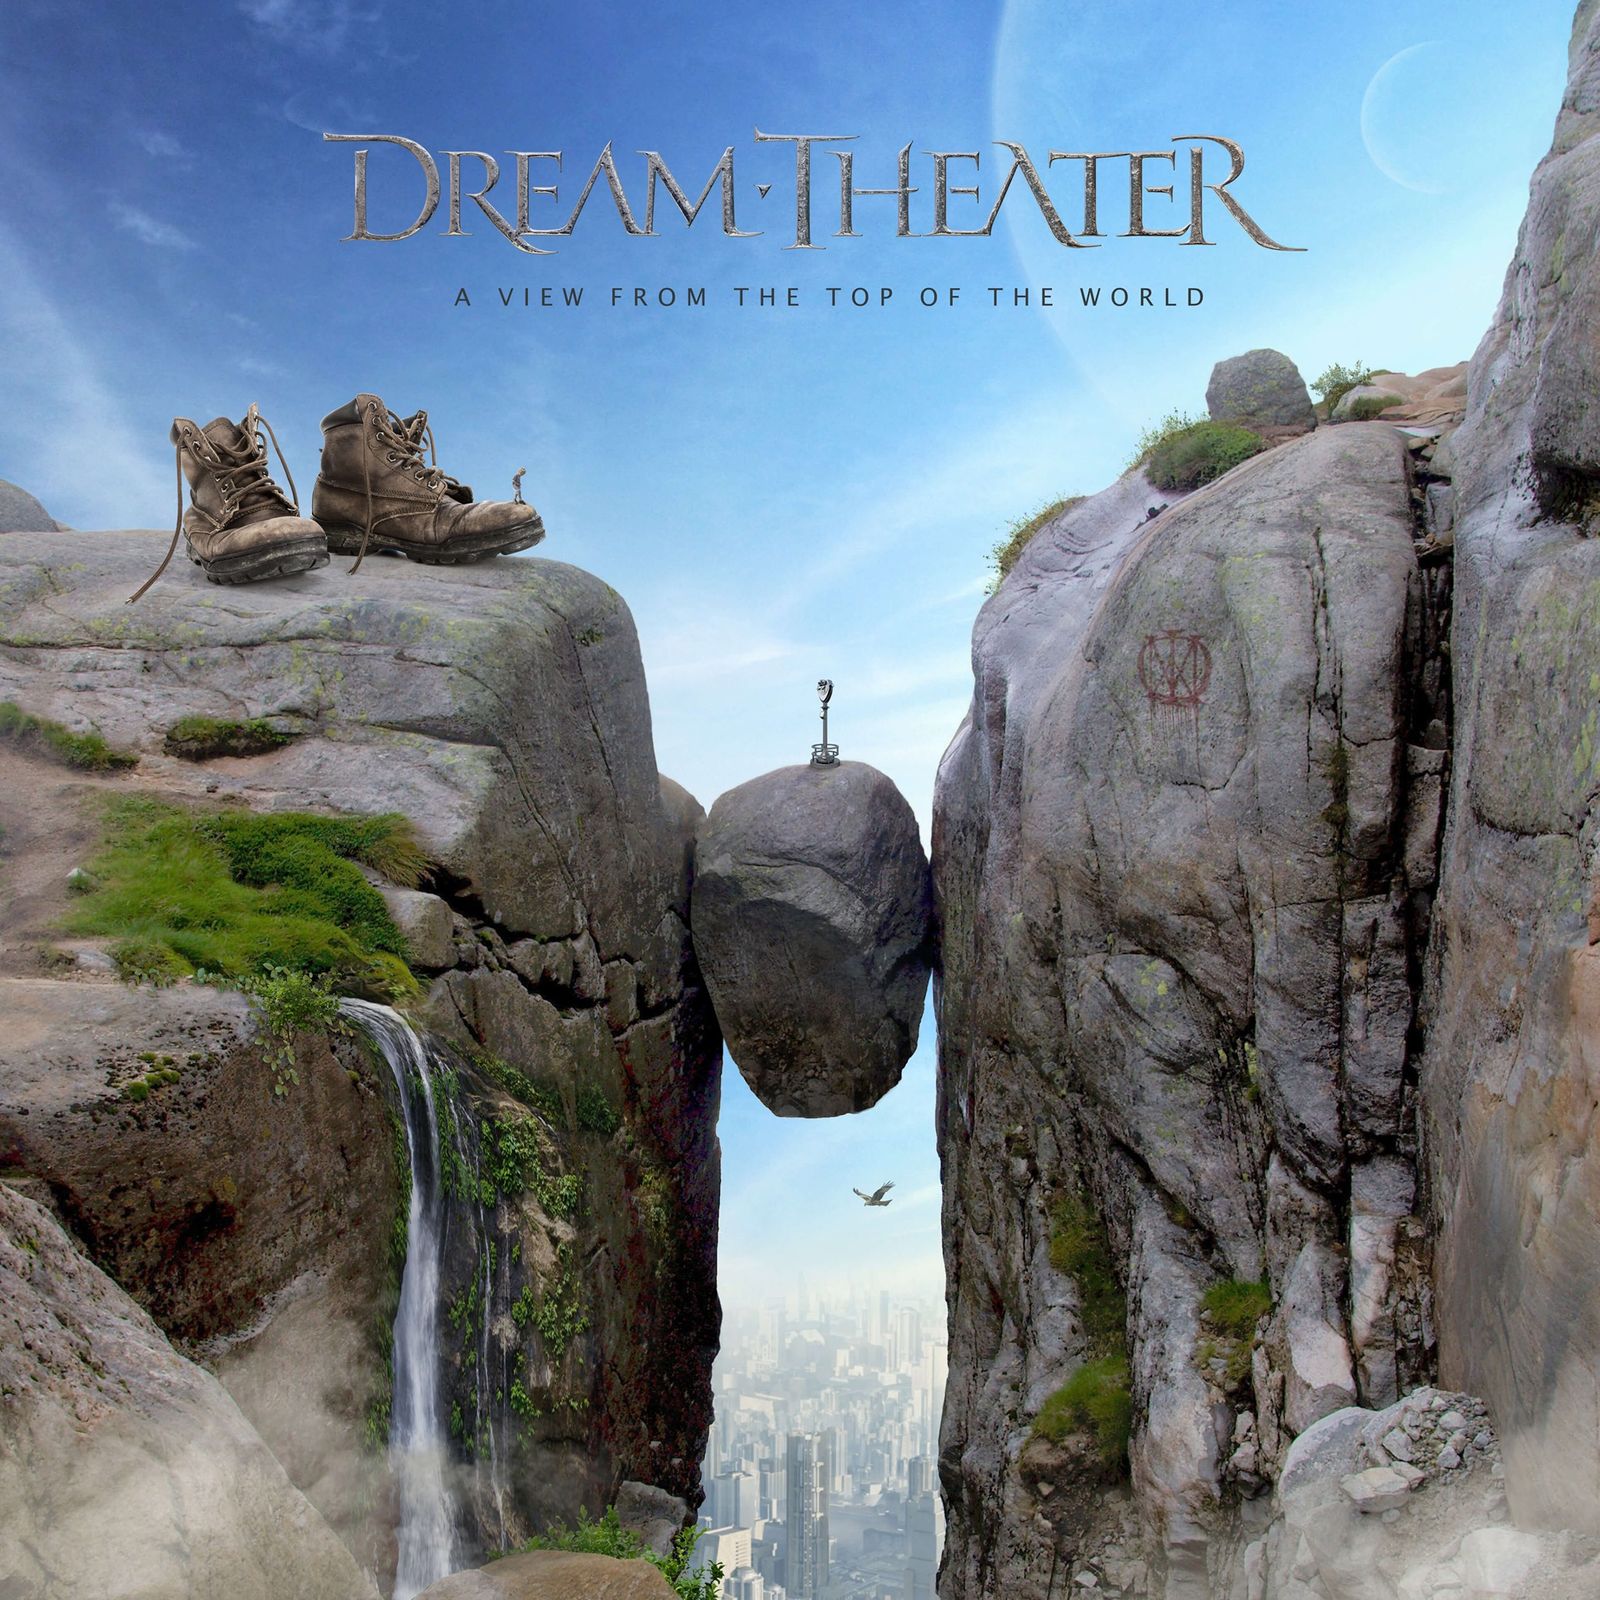 Dream Theater - The Alien (clip)